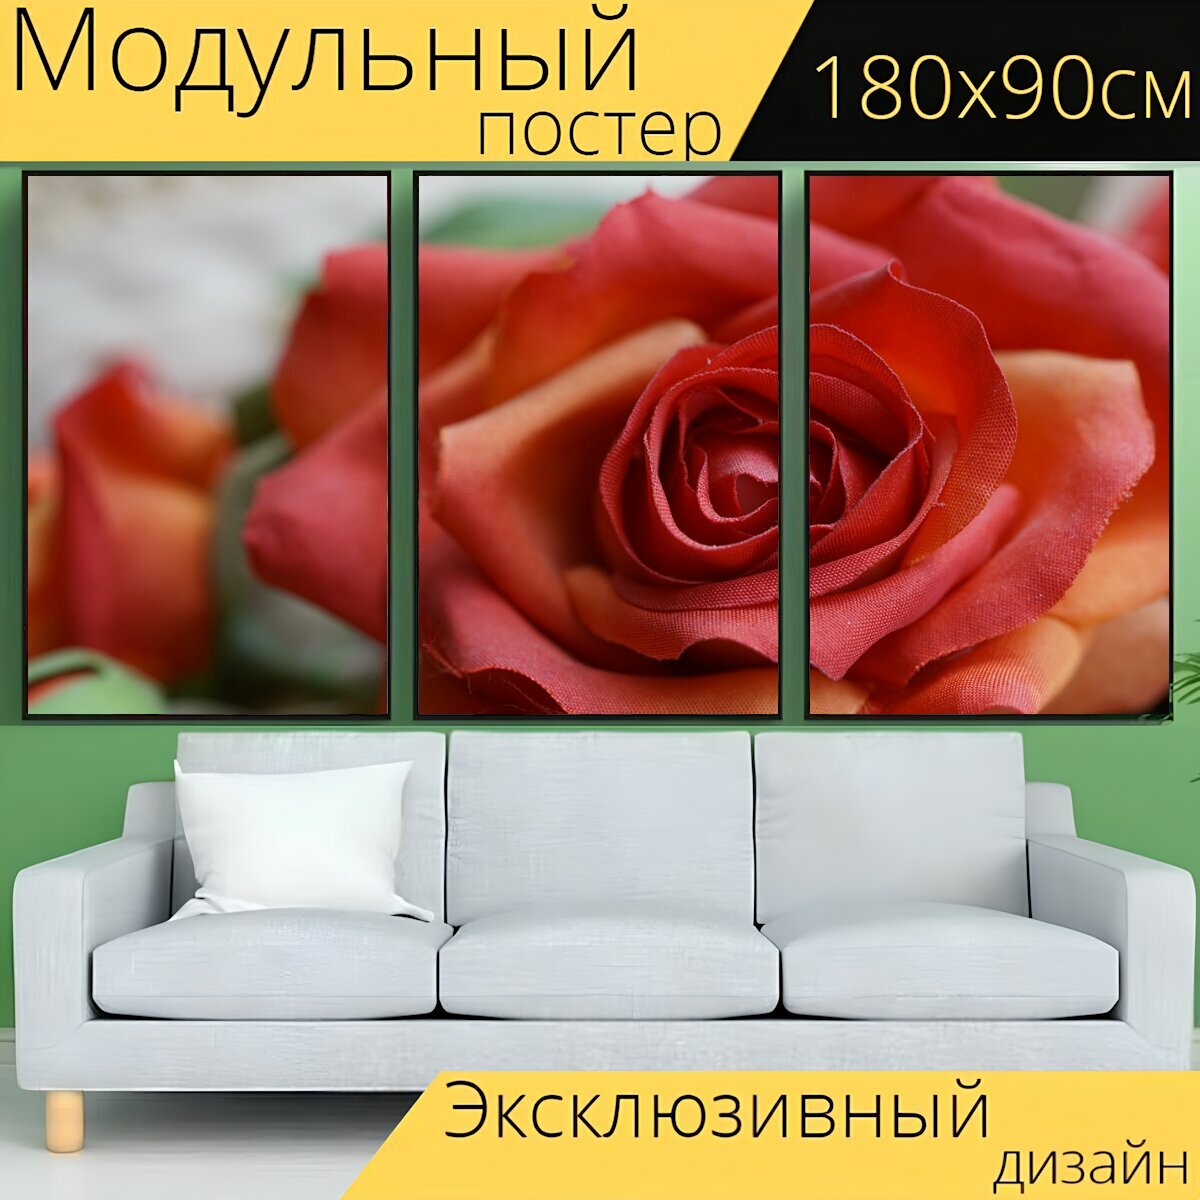 Модульный постер "Роза, искусственный цветок, украшение" 180 x 90 см. для интерьера